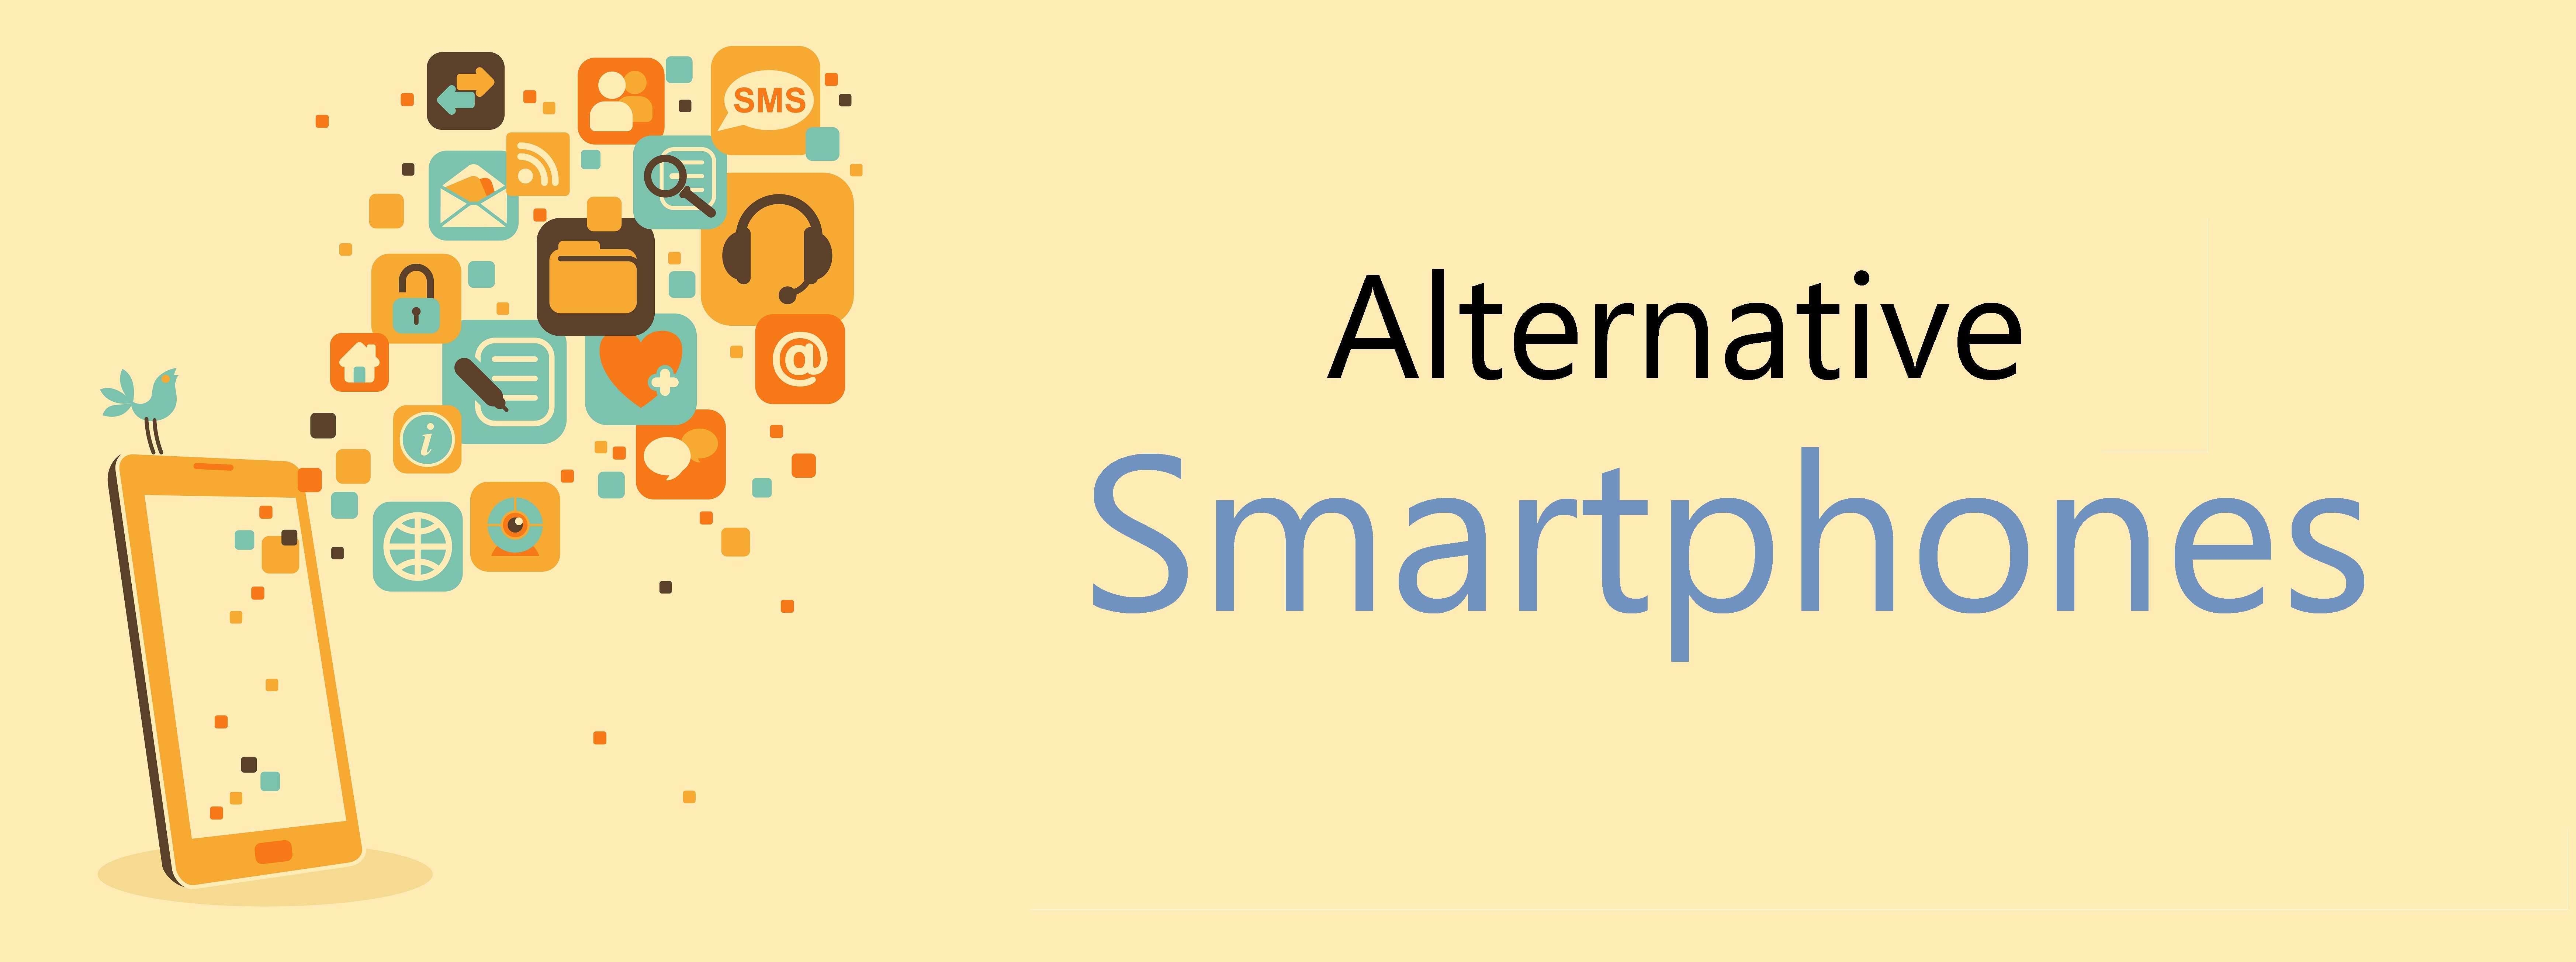 Alternative_smartphones_banner